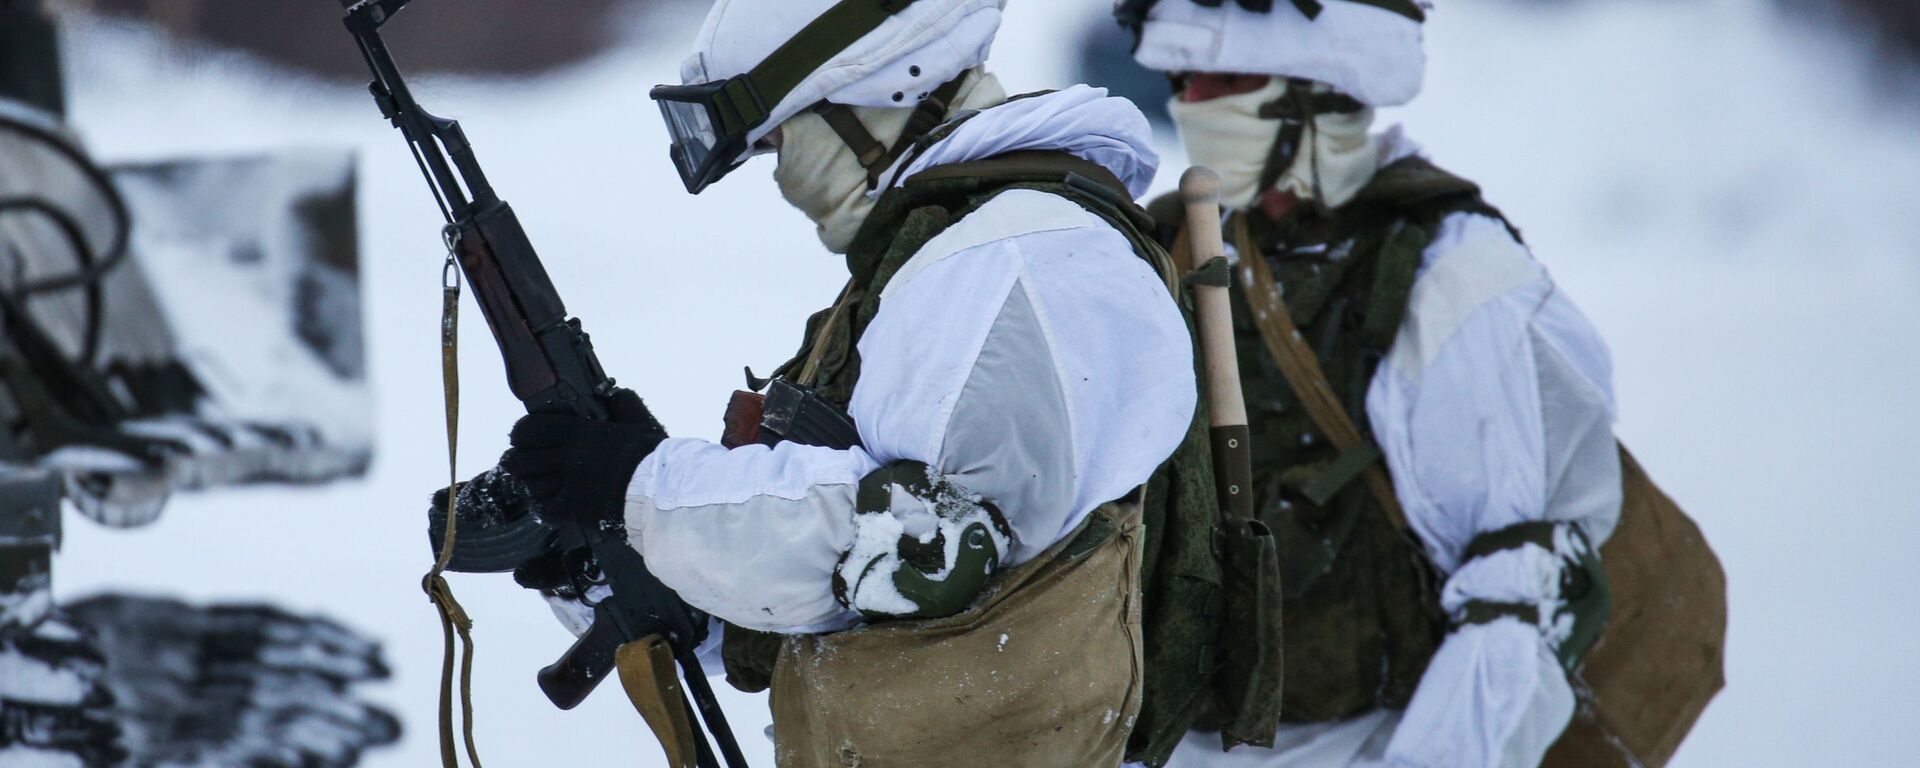 Военнослужащие мотострелкового подразделения Печенгской бригады Северного флота РФ проводят отработку тактических приемов - Sputnik Latvija, 1920, 06.02.2021